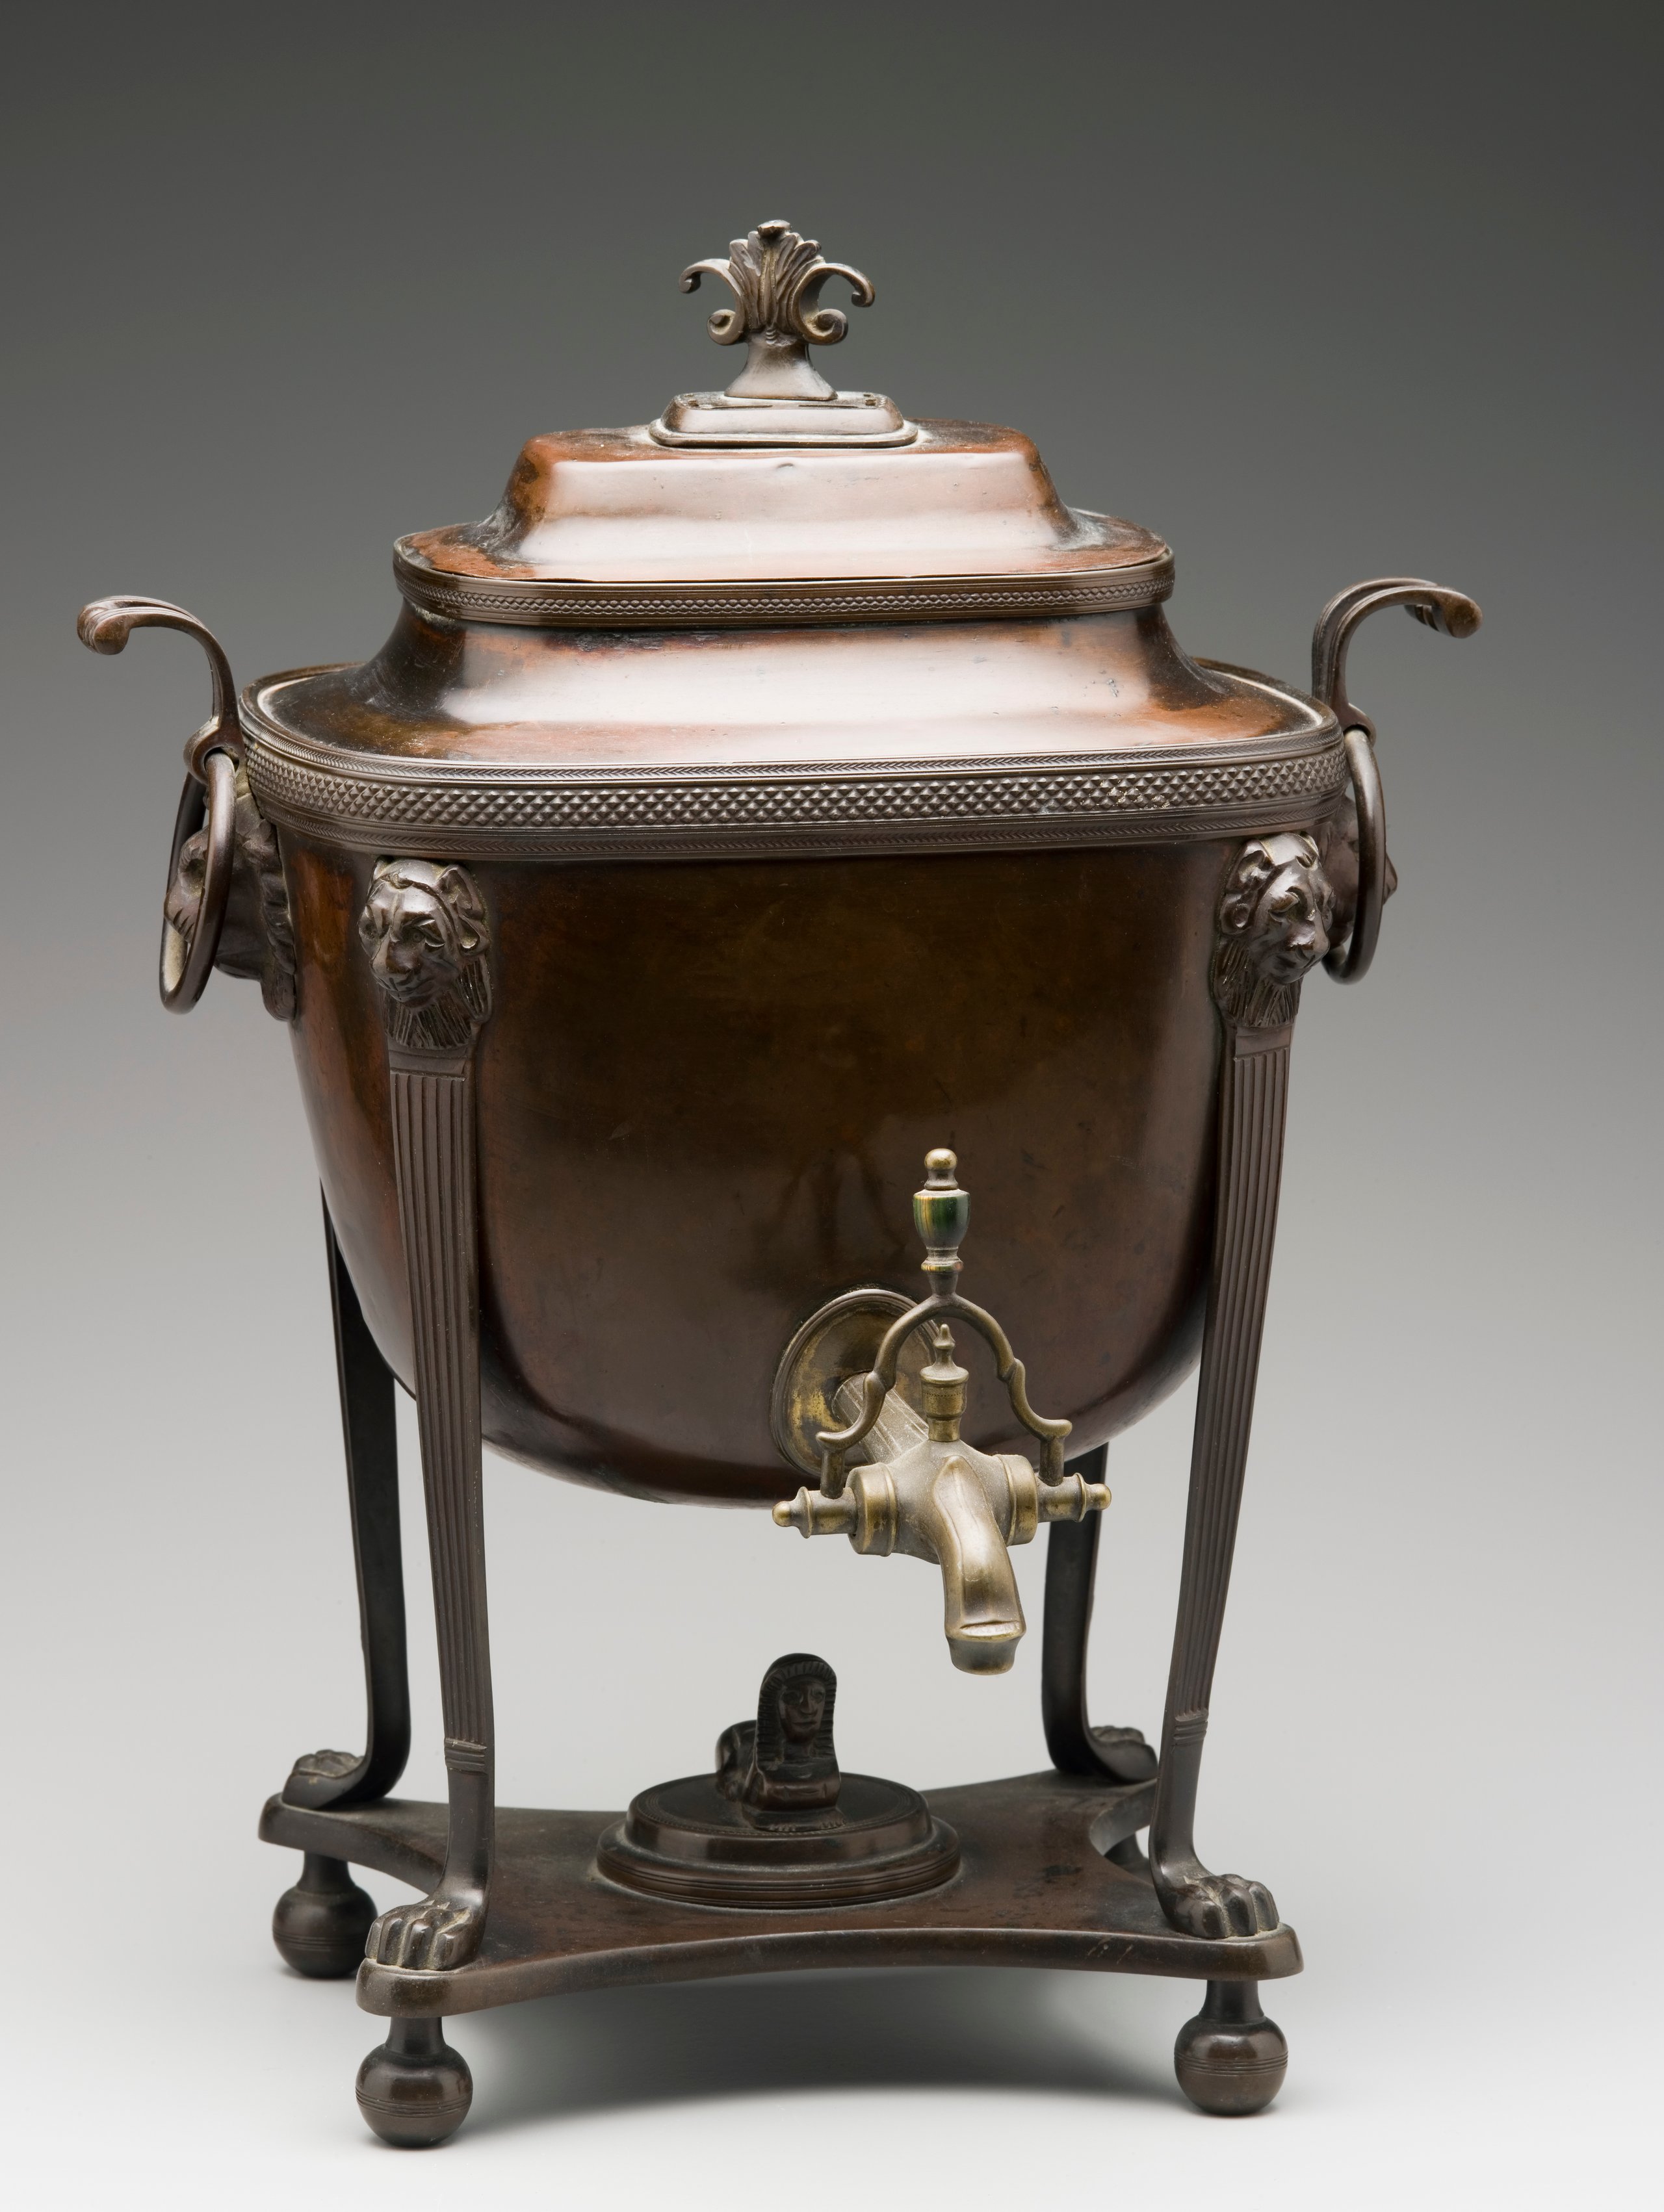 Regency tea urn